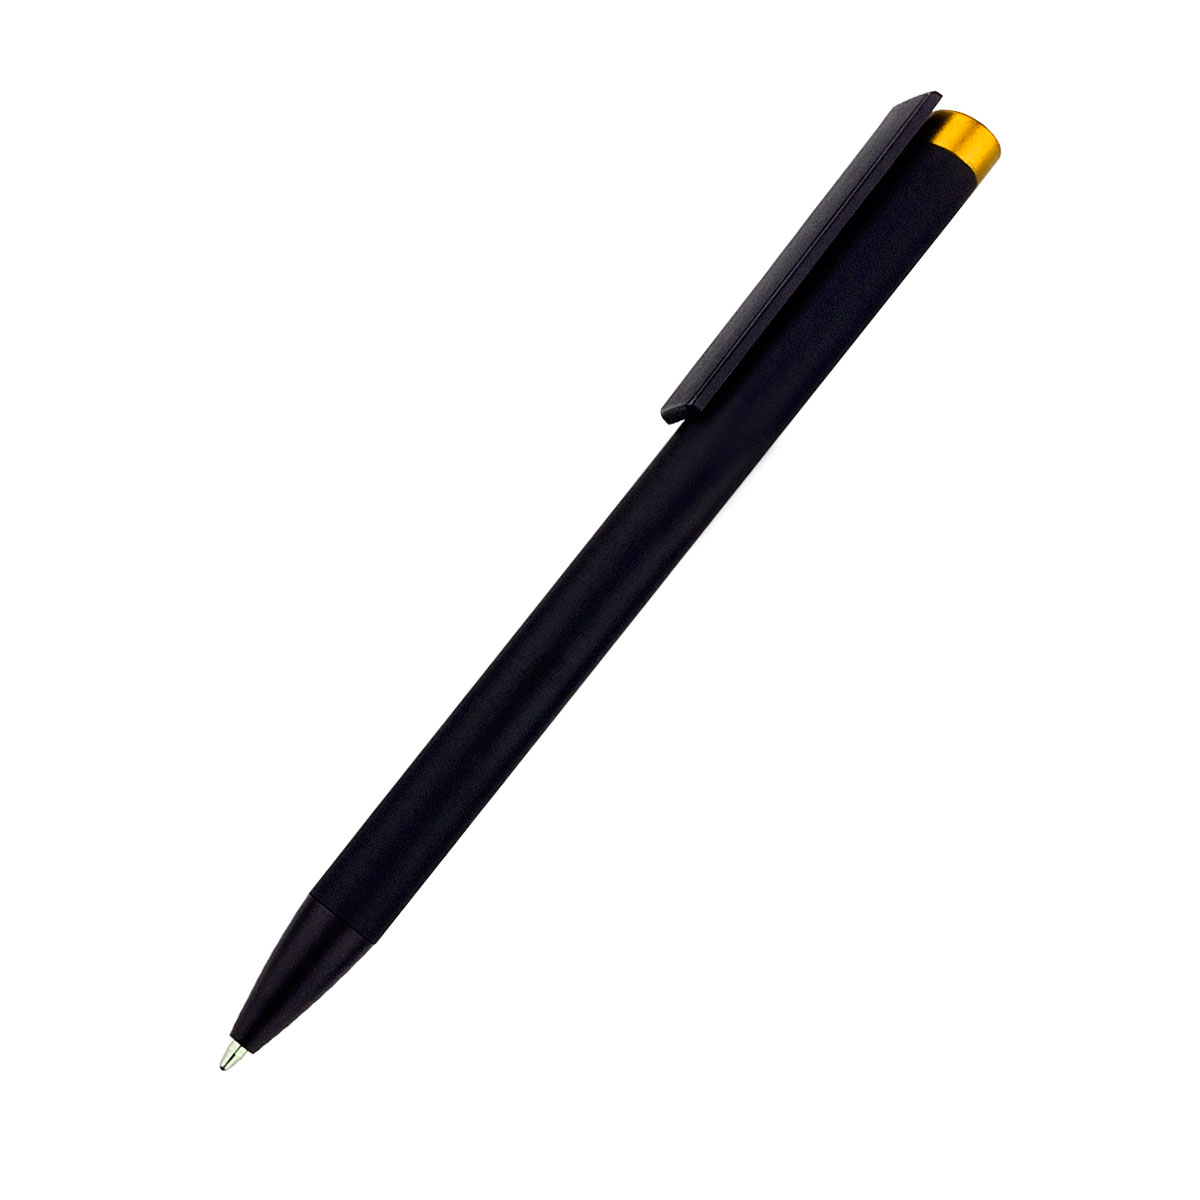 Ручка металлическая Slice Soft, желтая (Фото)